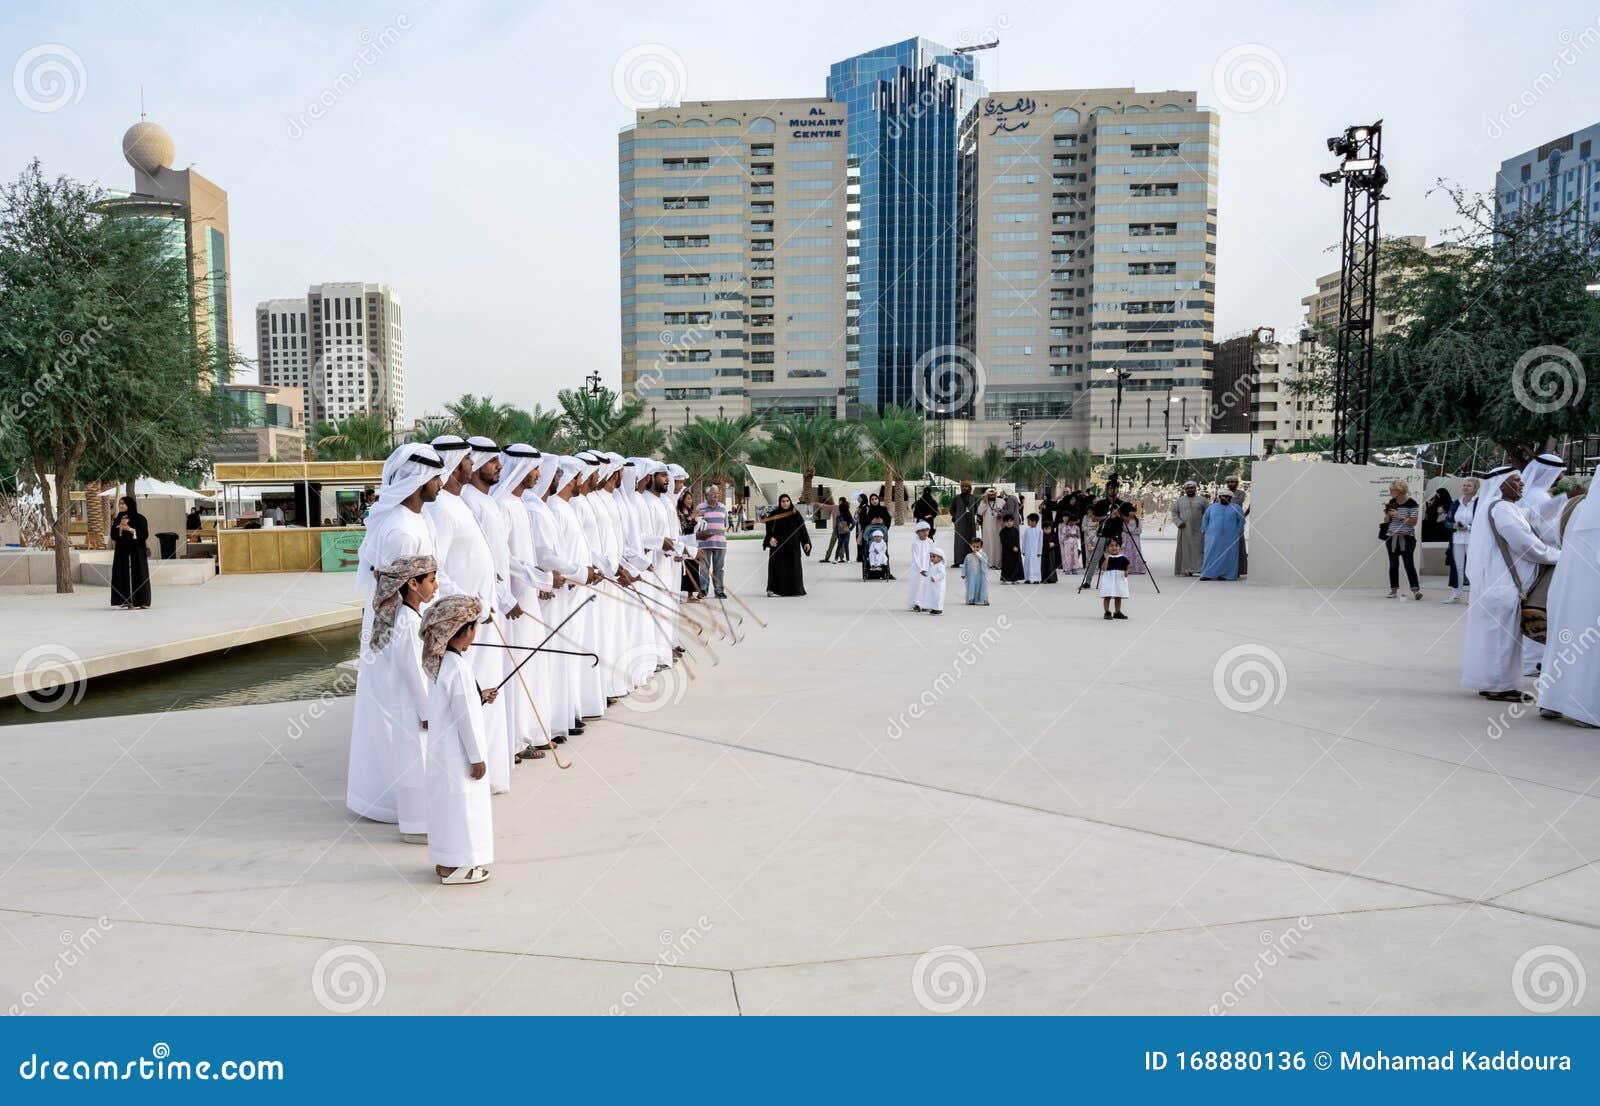 中东阿拉伯文化 — 阿联酋男子表演阿亚拉传统舞蹈 — 阿拉伯男子布 编辑类图片 - 图片 包括有 愉快, 文化: 174856875